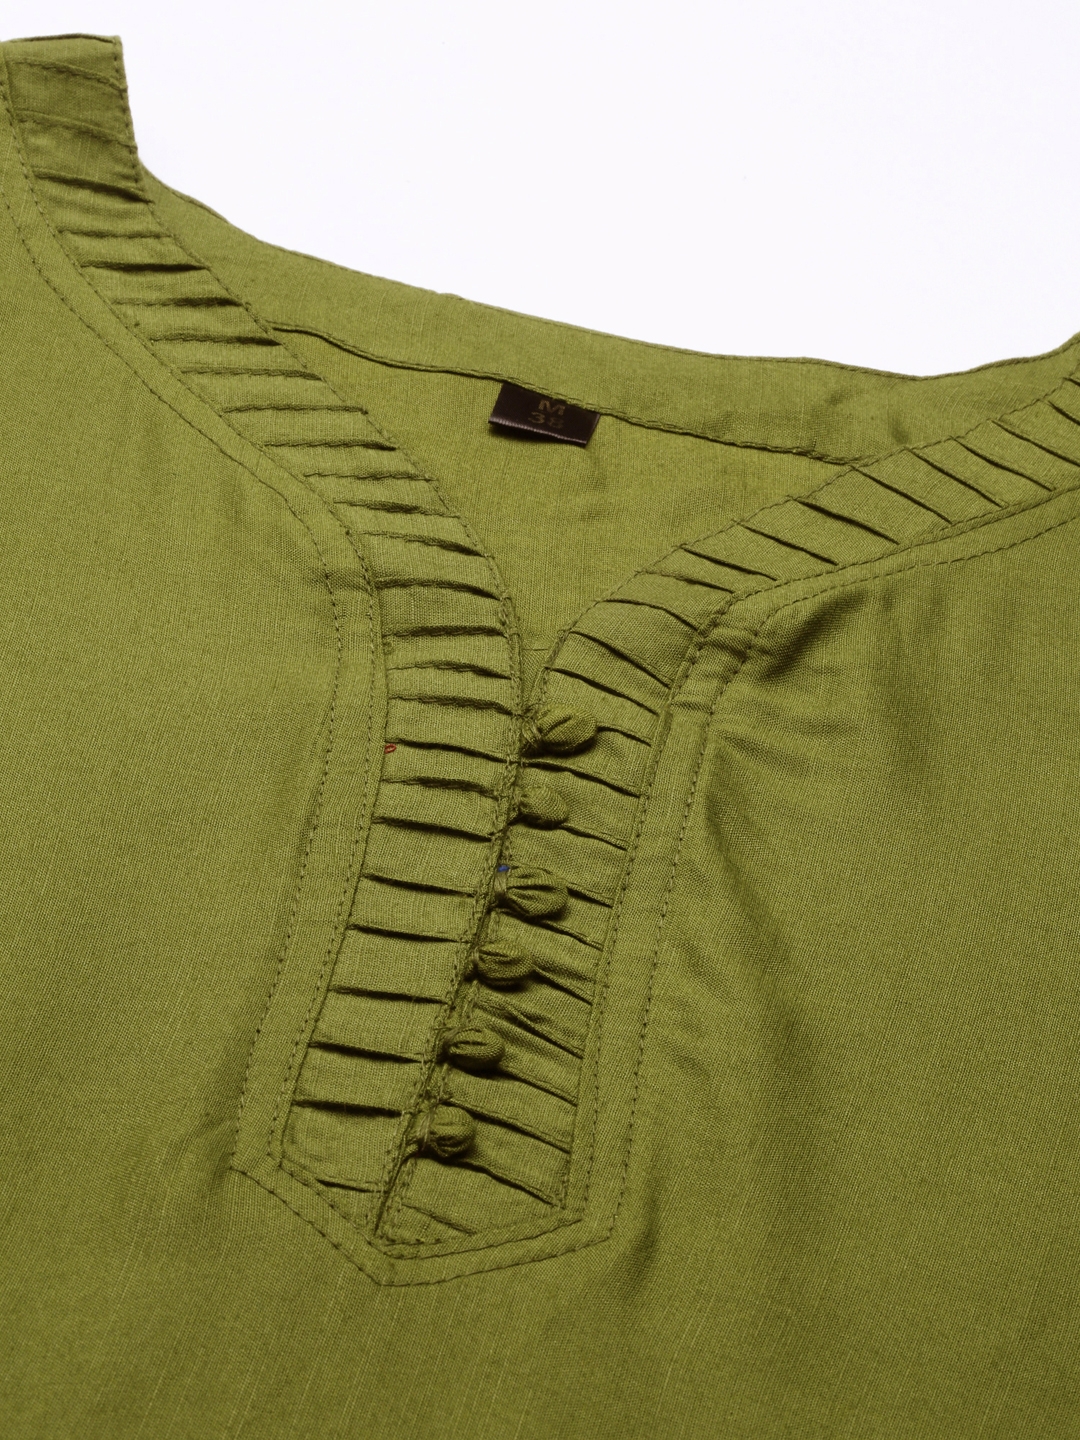 Women's Green Cotton Blend Solid Comfort Fit Kurtis